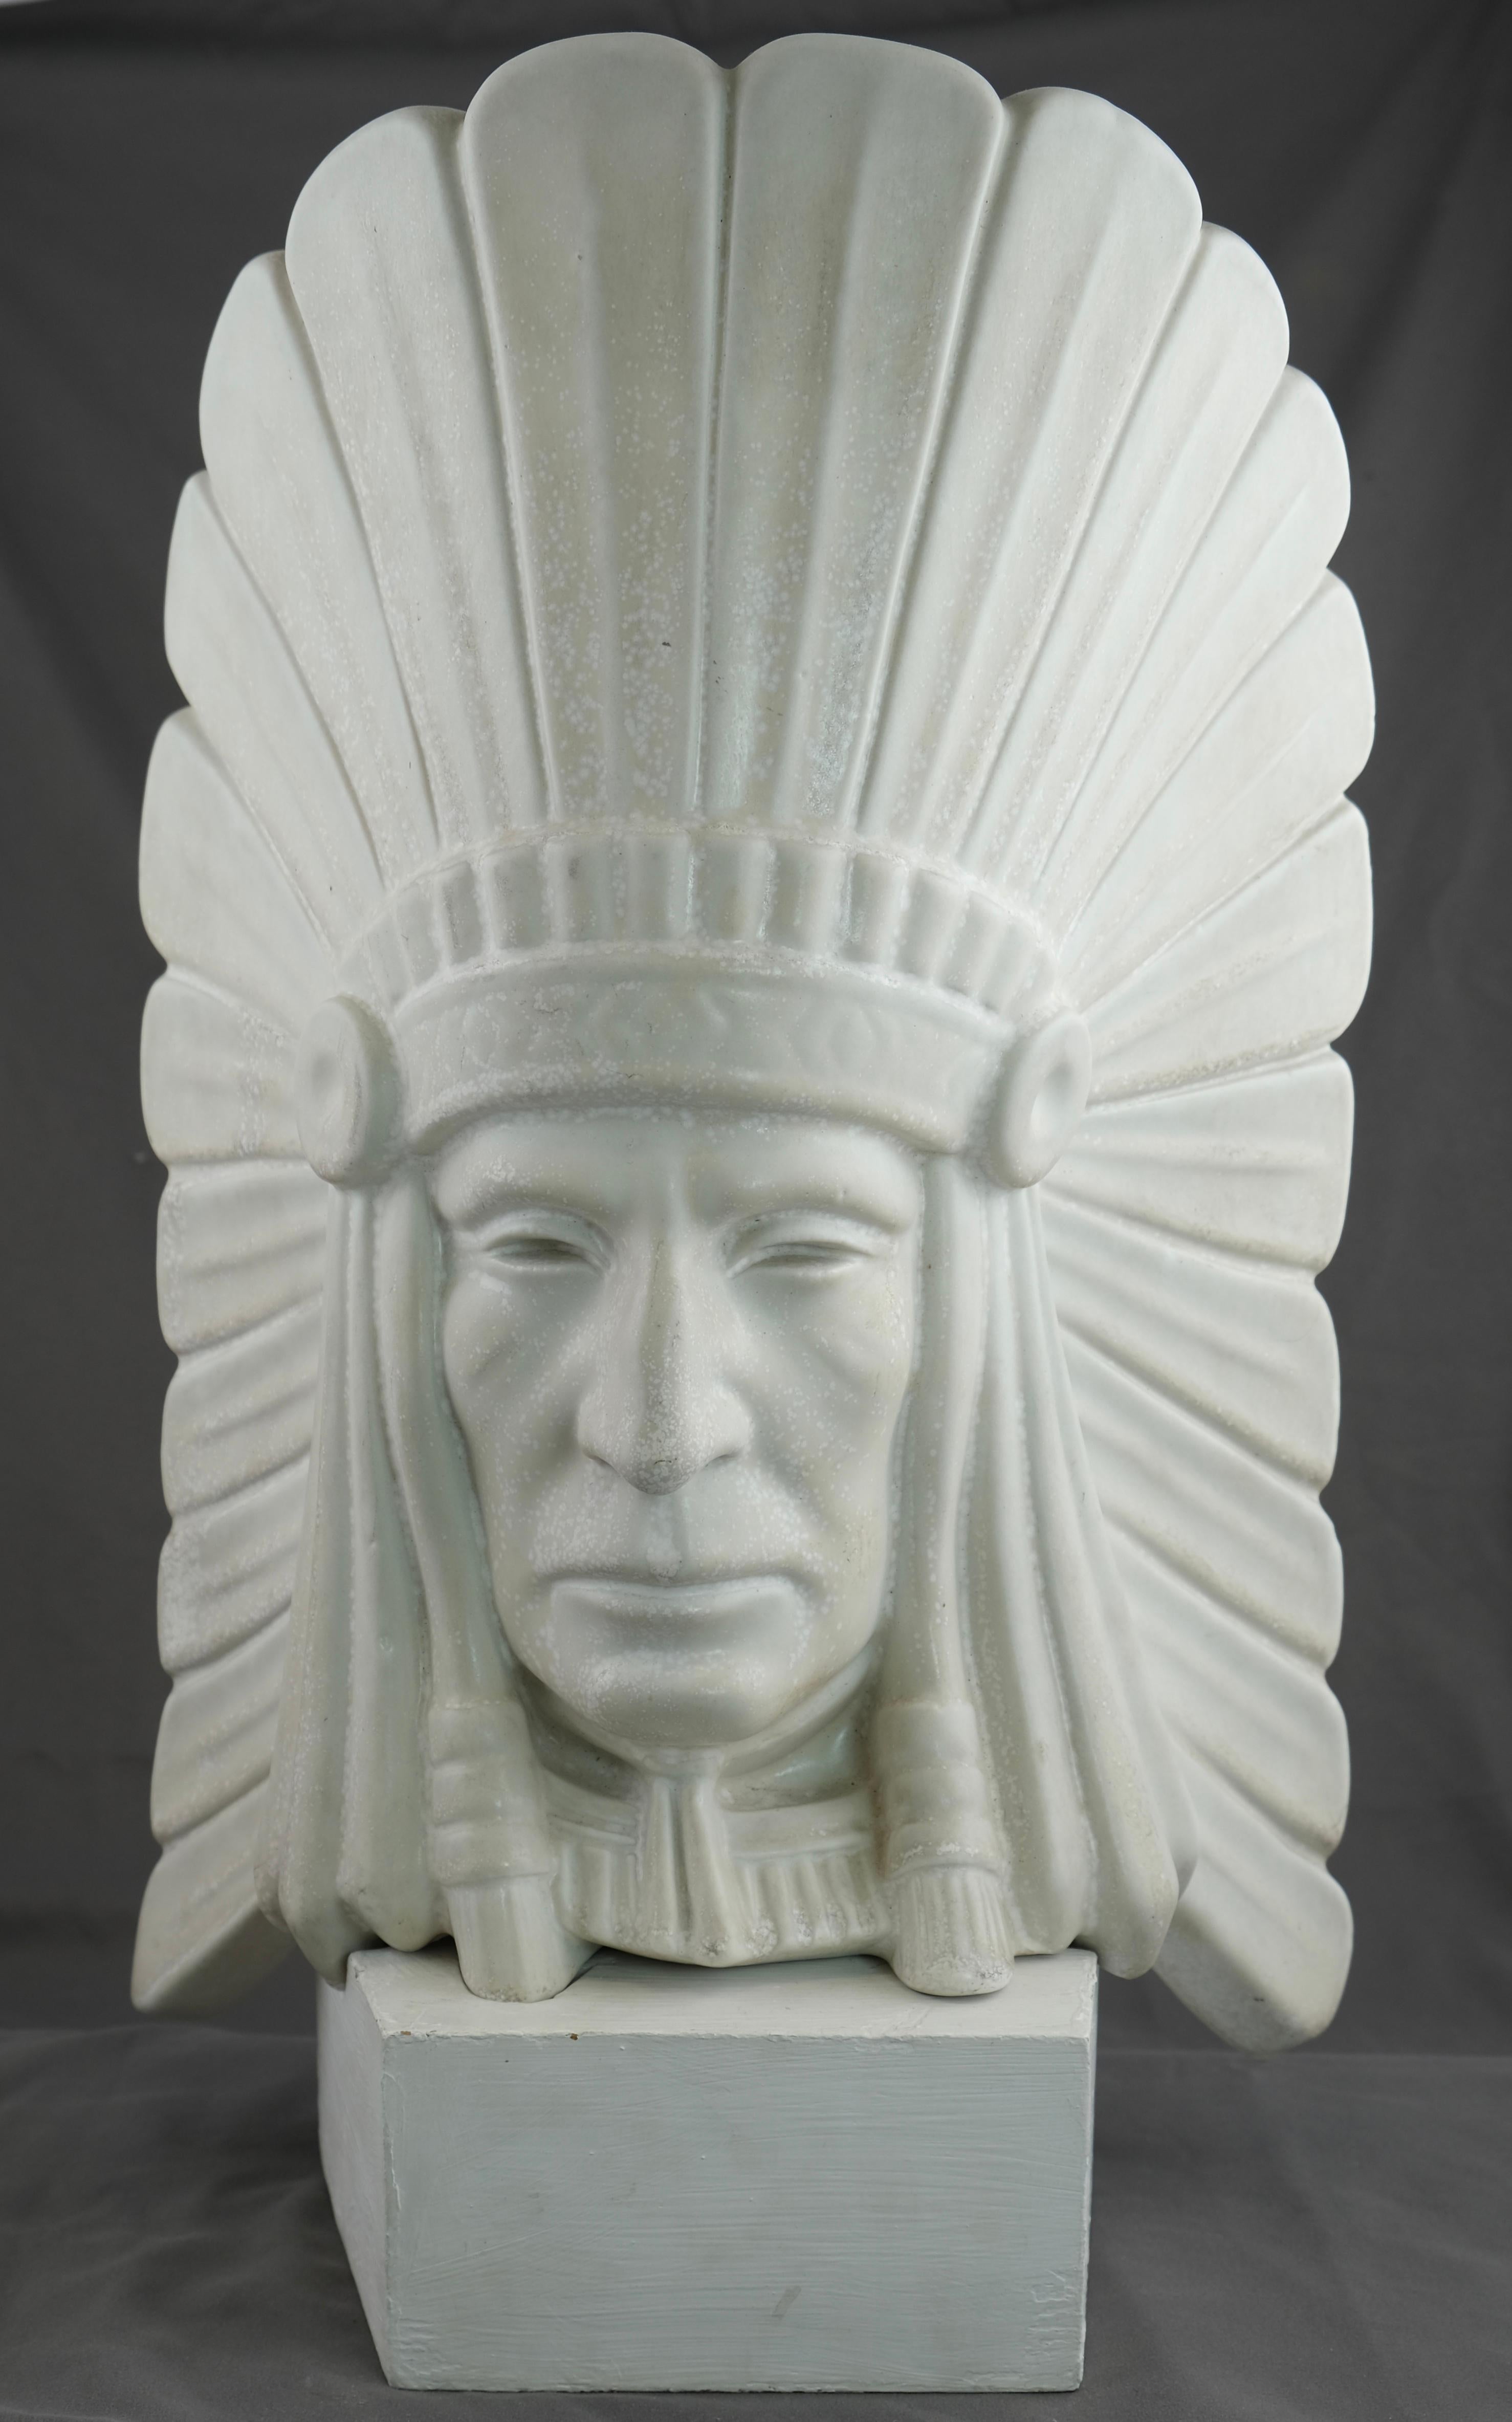 Ein skulpturaler Kopf eines Indianerhäuptlings Es heißt, dass es sich in Wirklichkeit um ein Selbstporträt des Künstlers Gunnar Nylund handelt. Es hat seinen originalen Holzständer. Die Skulptur ist mit 20/100 nummeriert. Signiert G.N. und